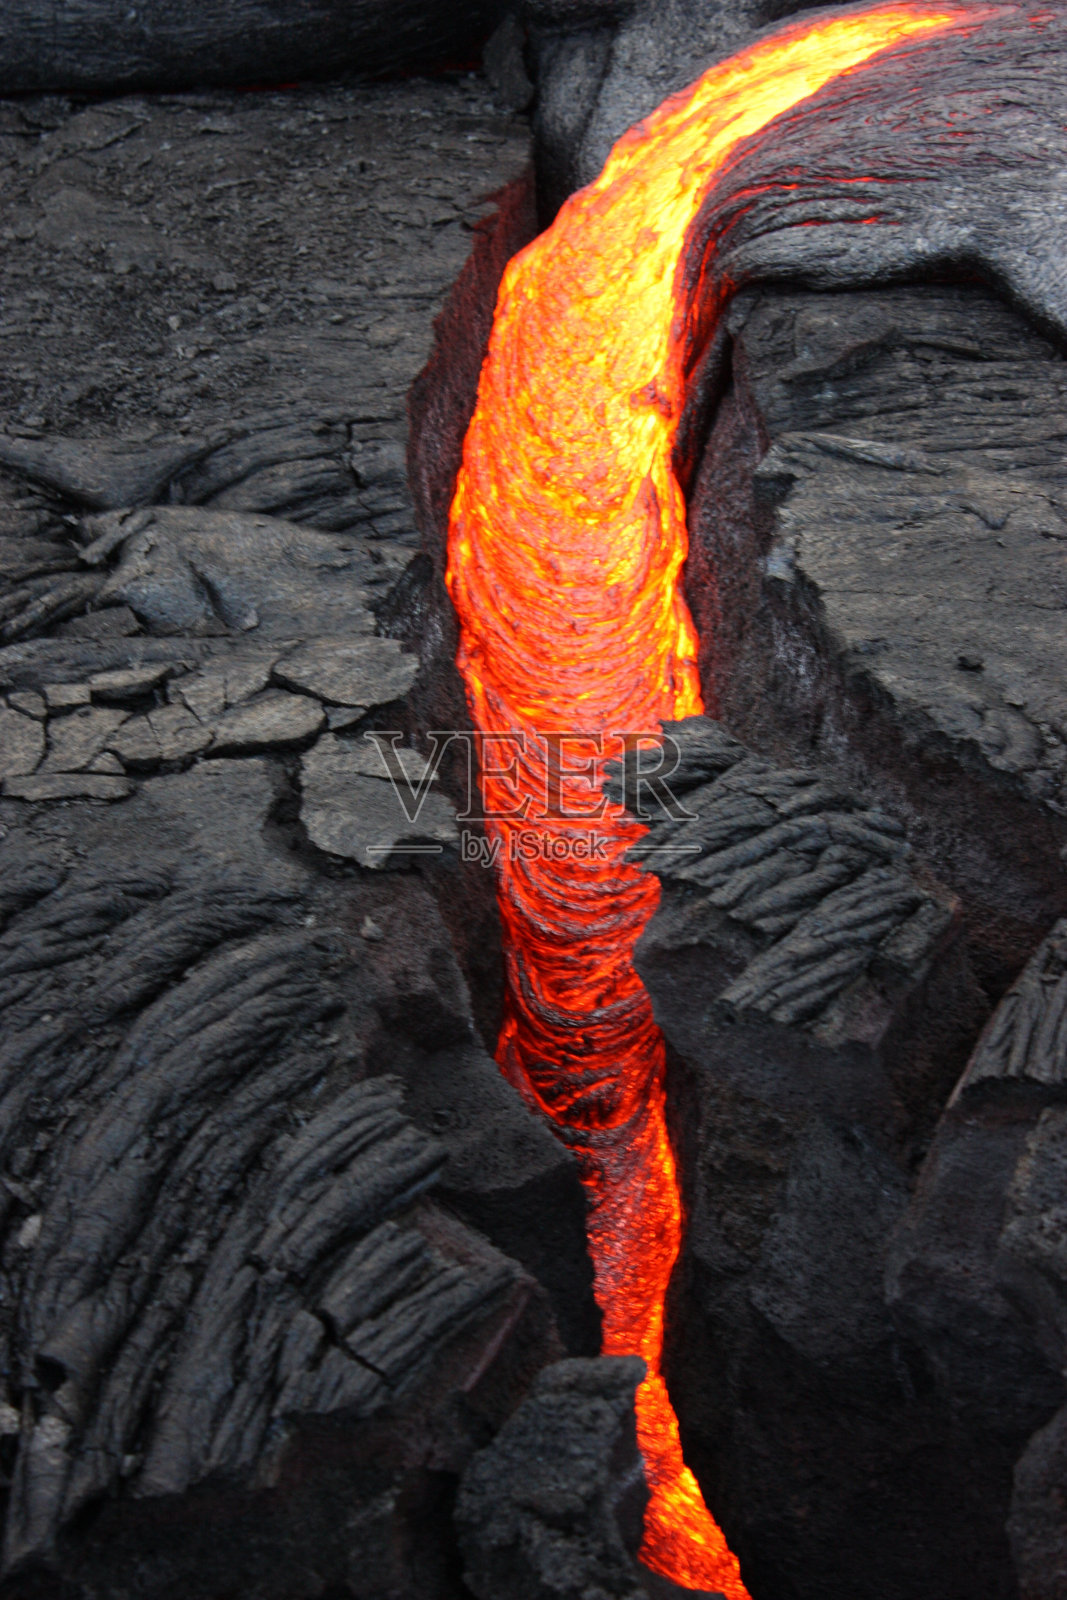 来自夏威夷群岛的新鲜熔岩照片摄影图片